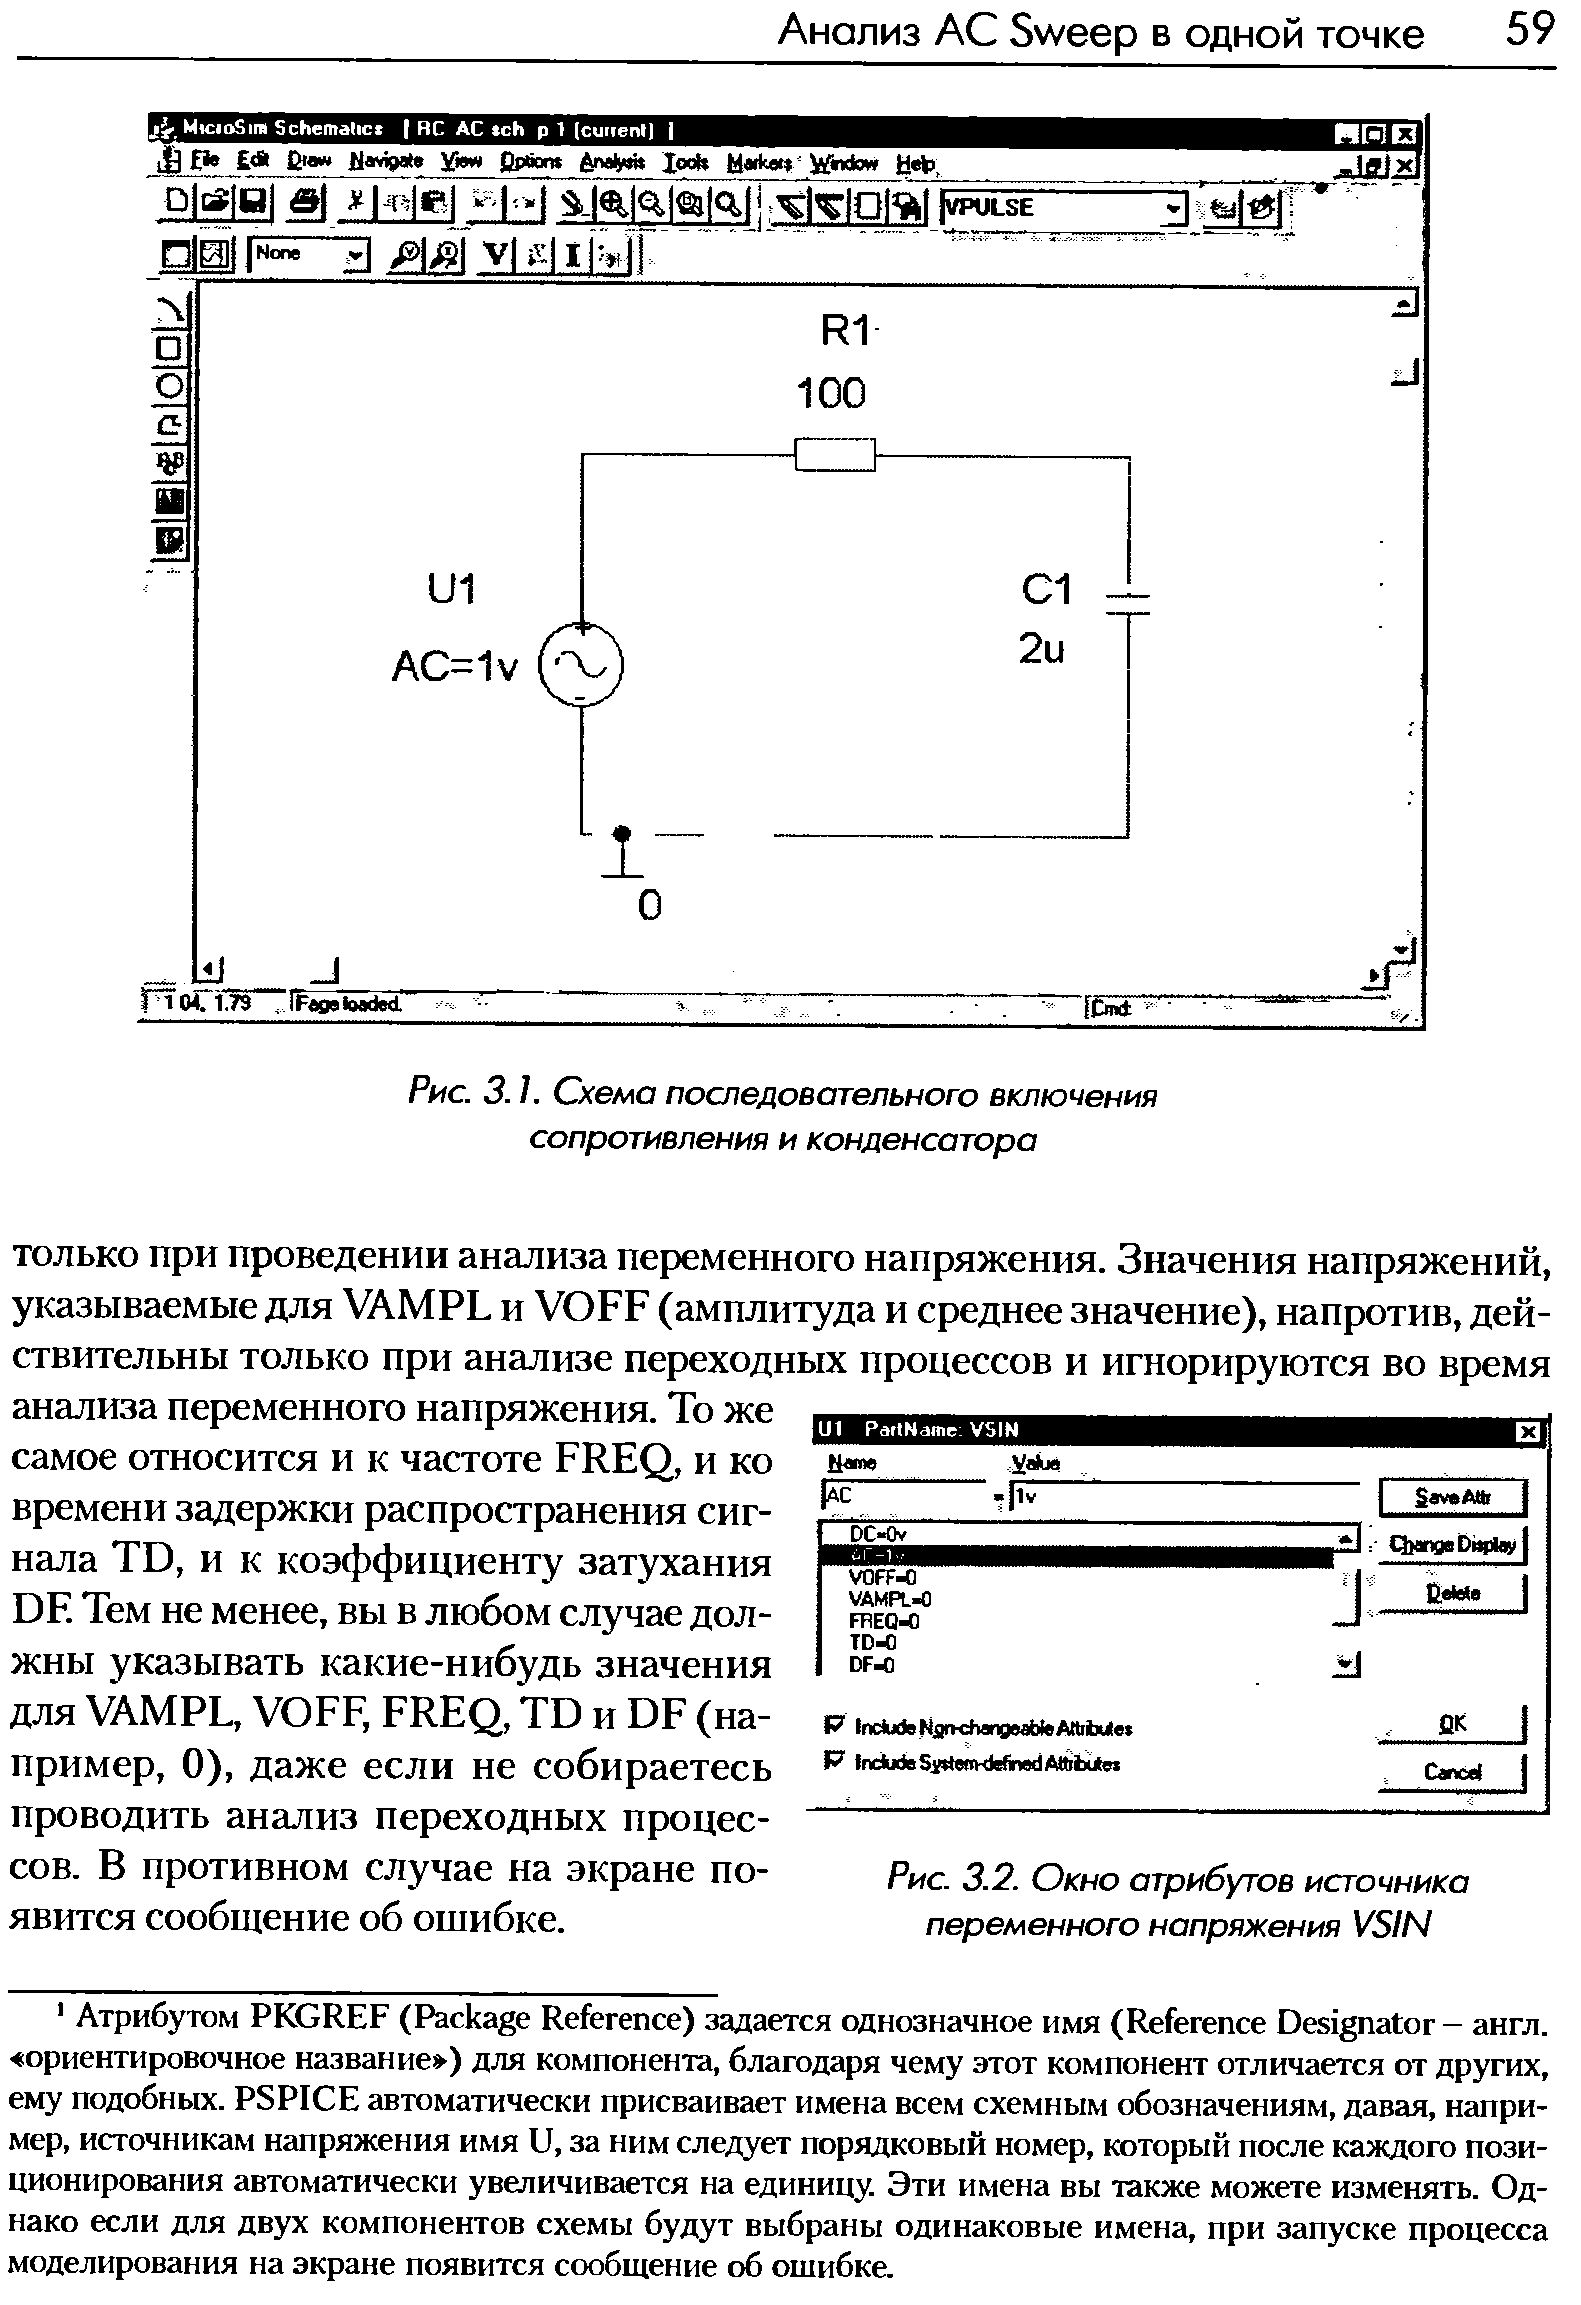 Рис. 3.1. Схема последовательного включения сопротивления и конденсатора
